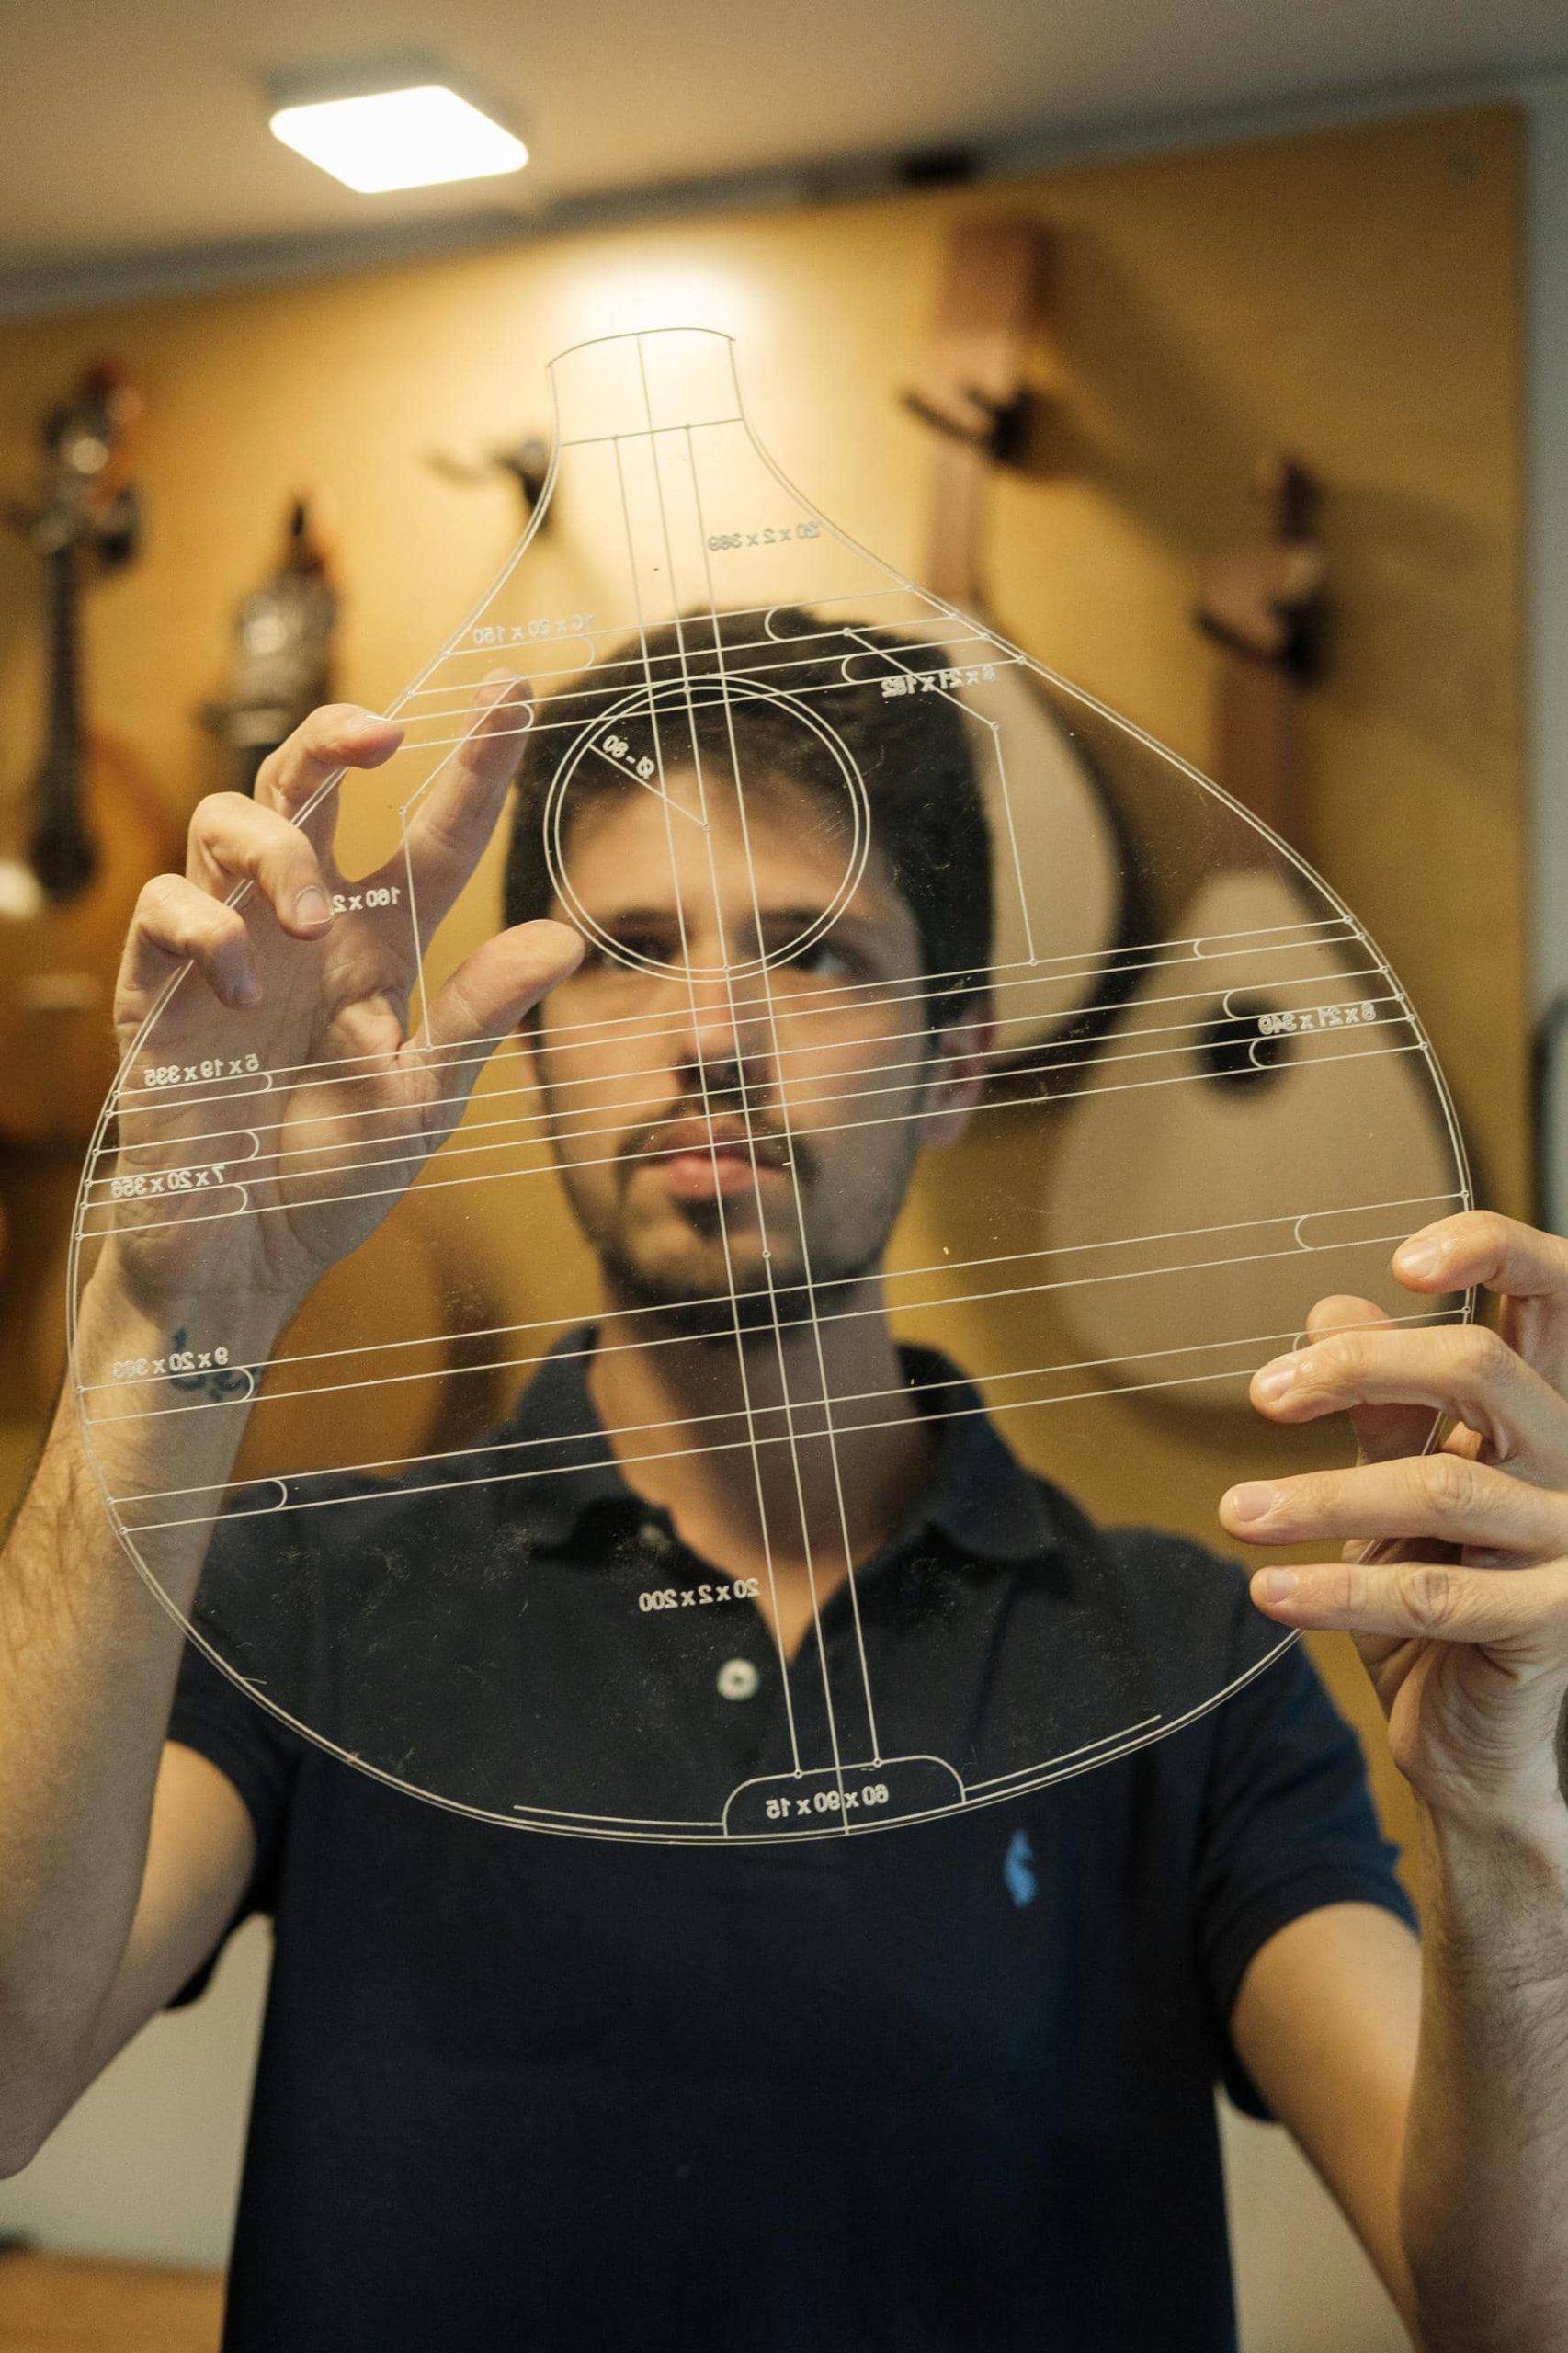 Artista Leonardo Afonso confere detalhes e medidas da guitarra em molde transparente.